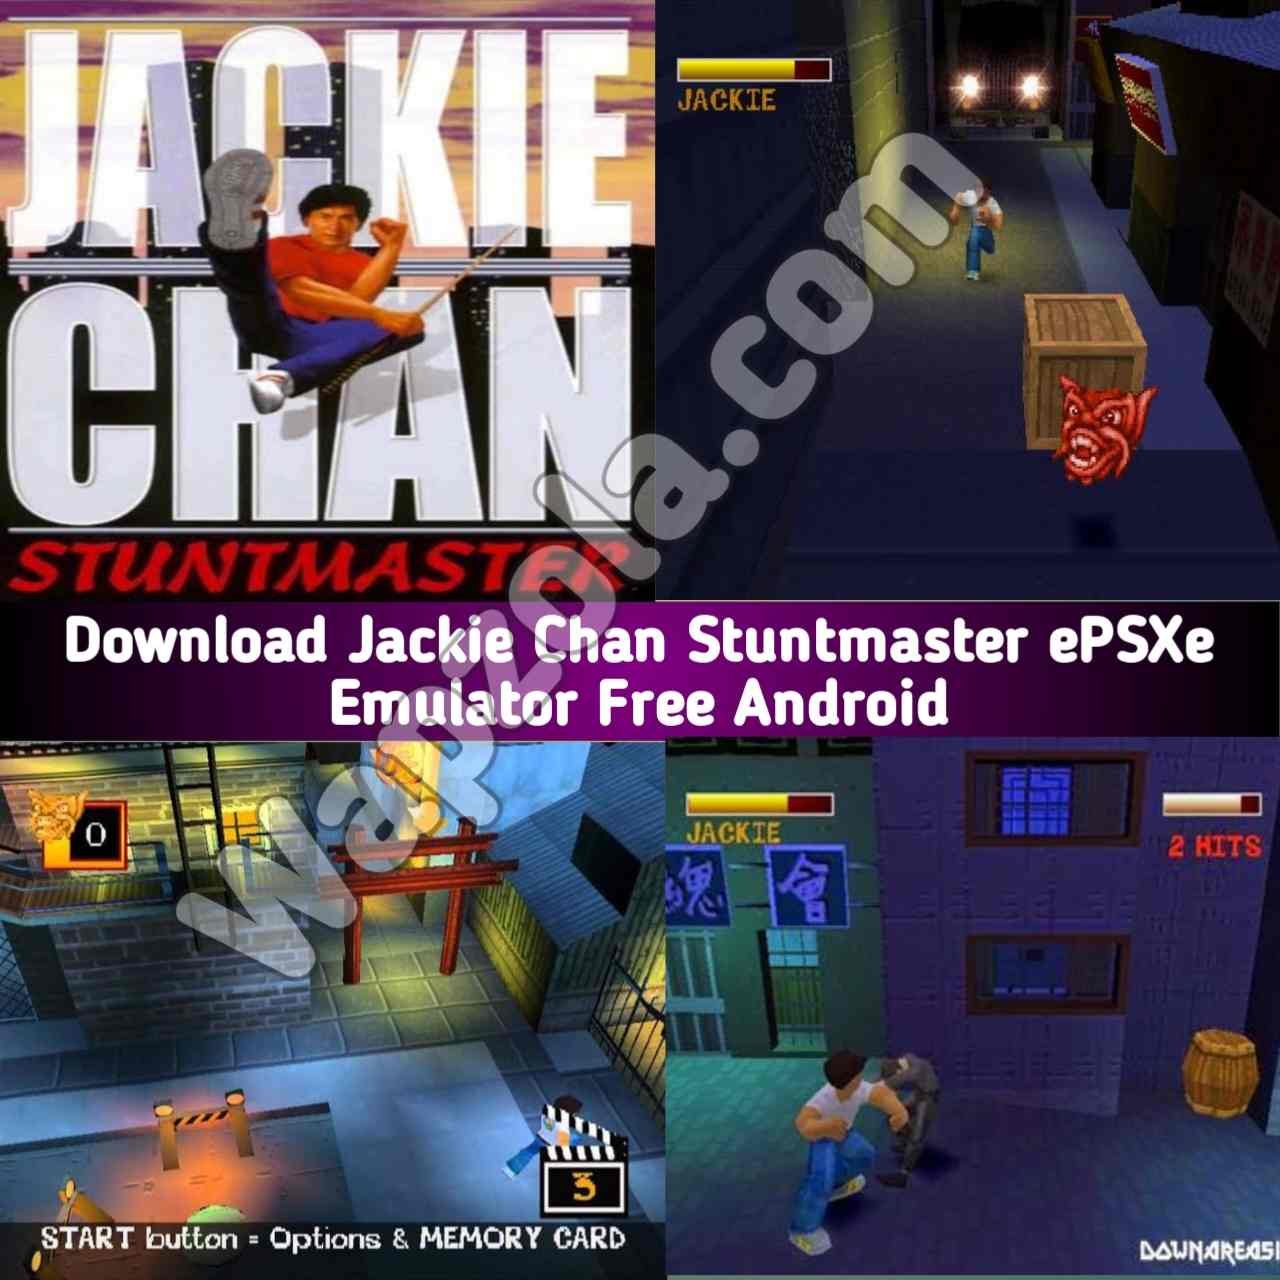 [Descargar] Jackie Chan Stuntmaster ROM (ISO) ePSXe y emulador Fpse (tamaño 35 MB) altamente comprimido – Sony Playstation / PSX / PS1 APK BIN/CUE play en Android y PC 9